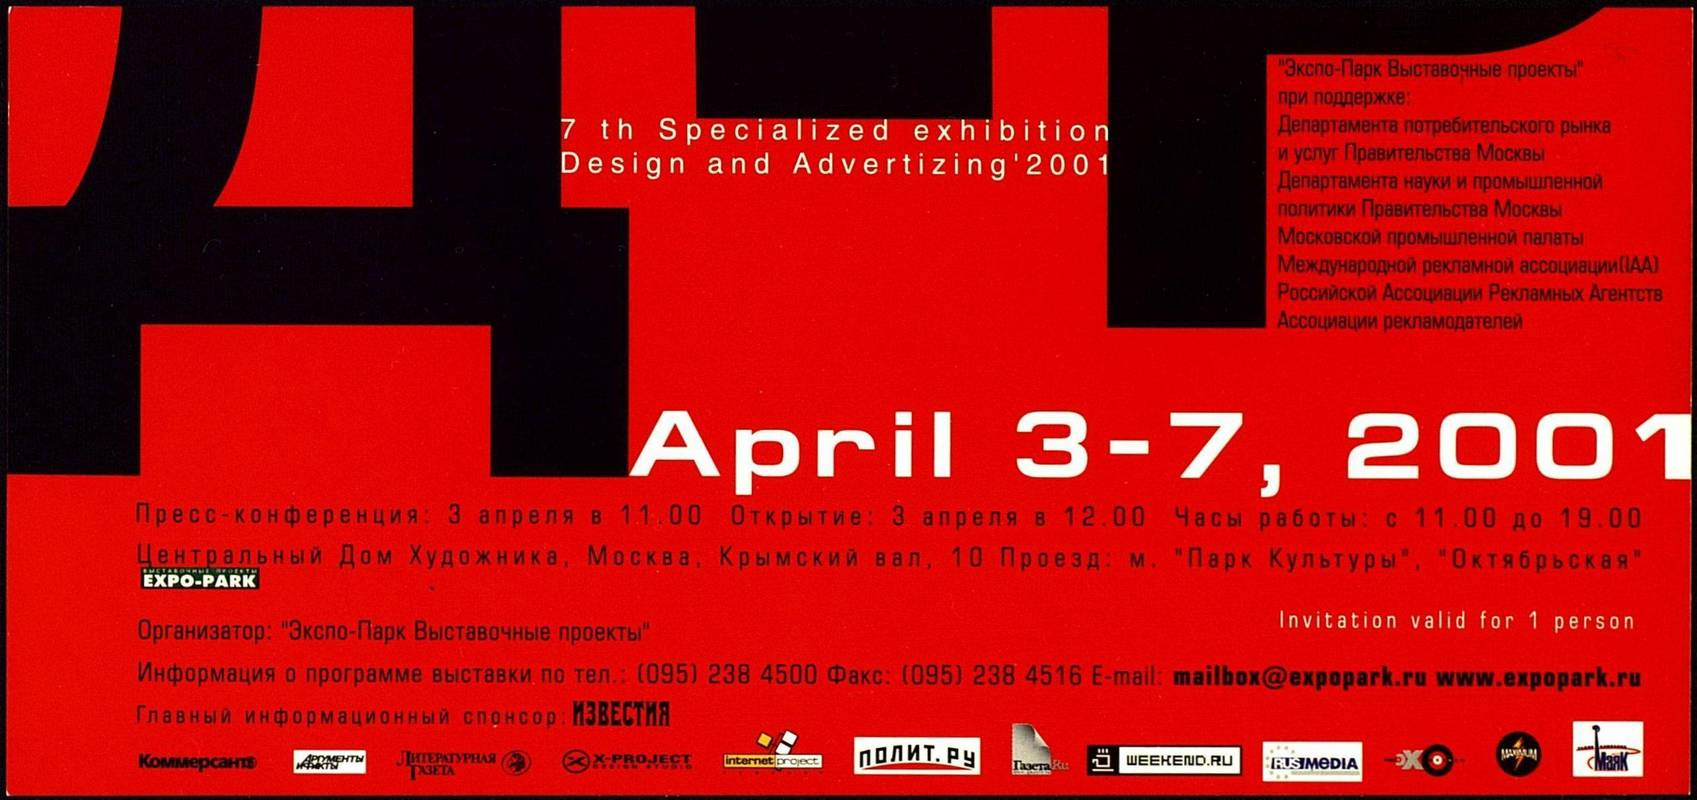 Дизайн и реклама 2001. VII специализированная выставка рекламы